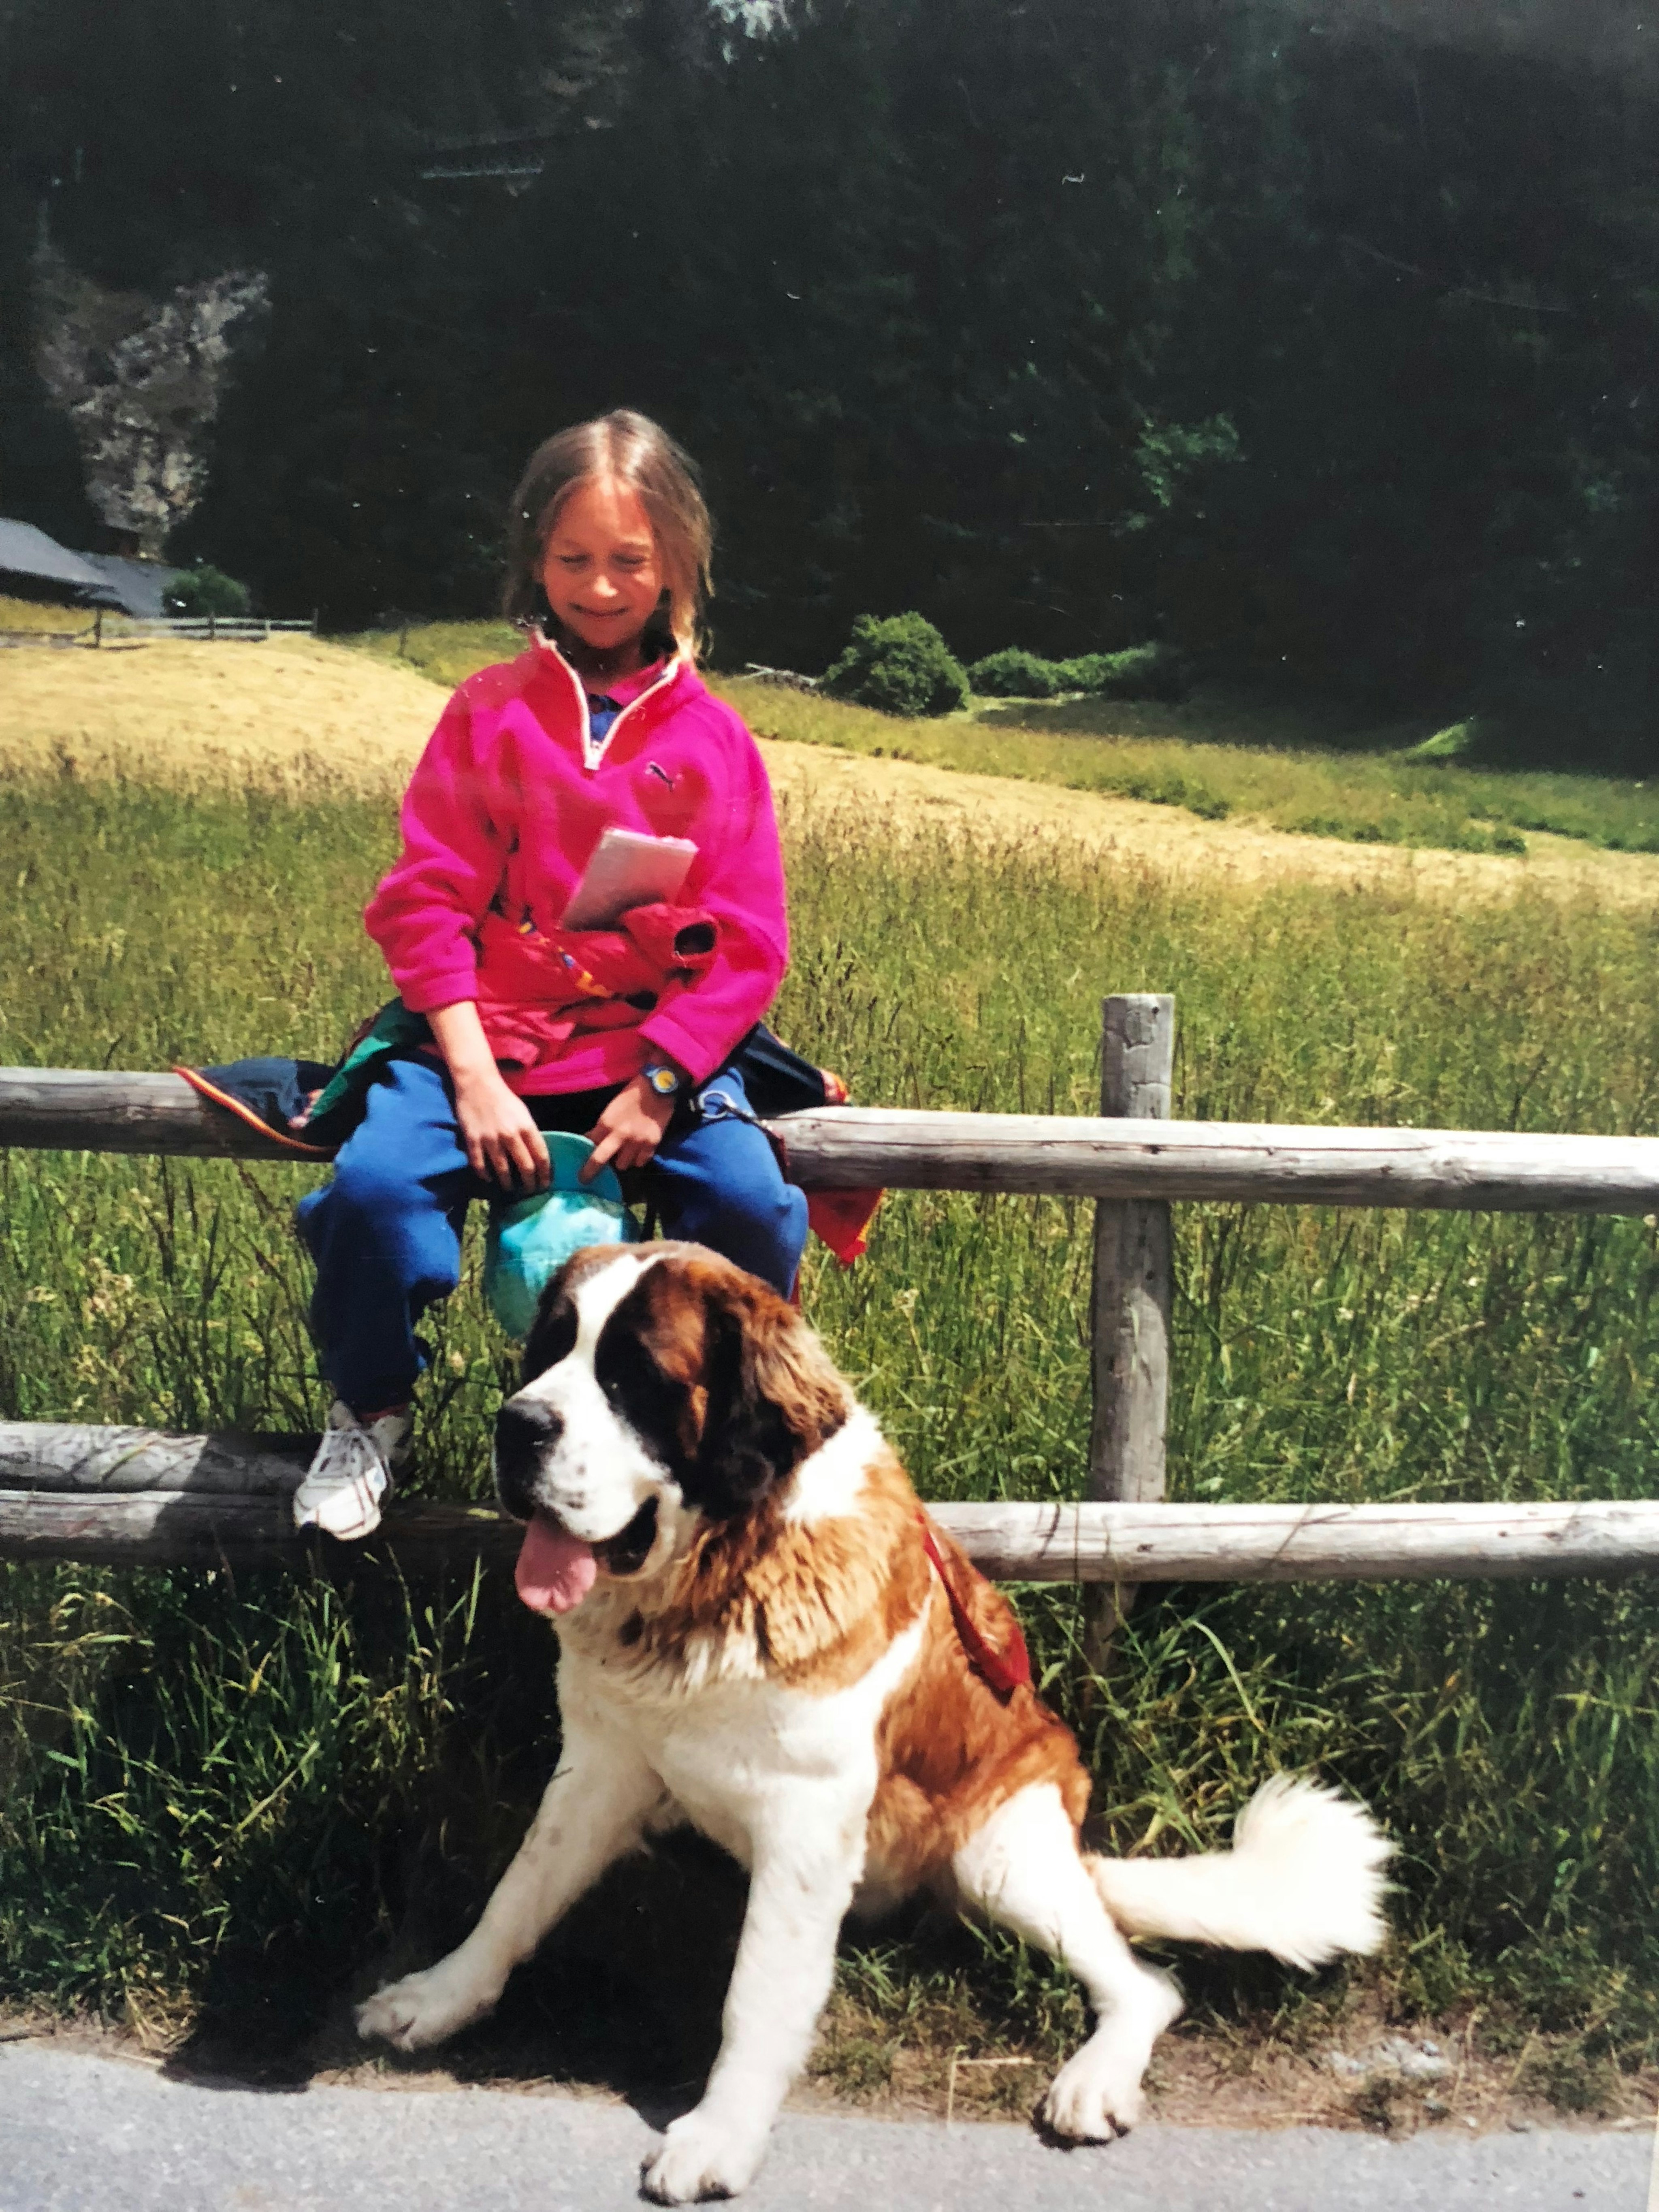 Un petit enfant est assis sur une barrière, en face de lui se trouve un gros chien.